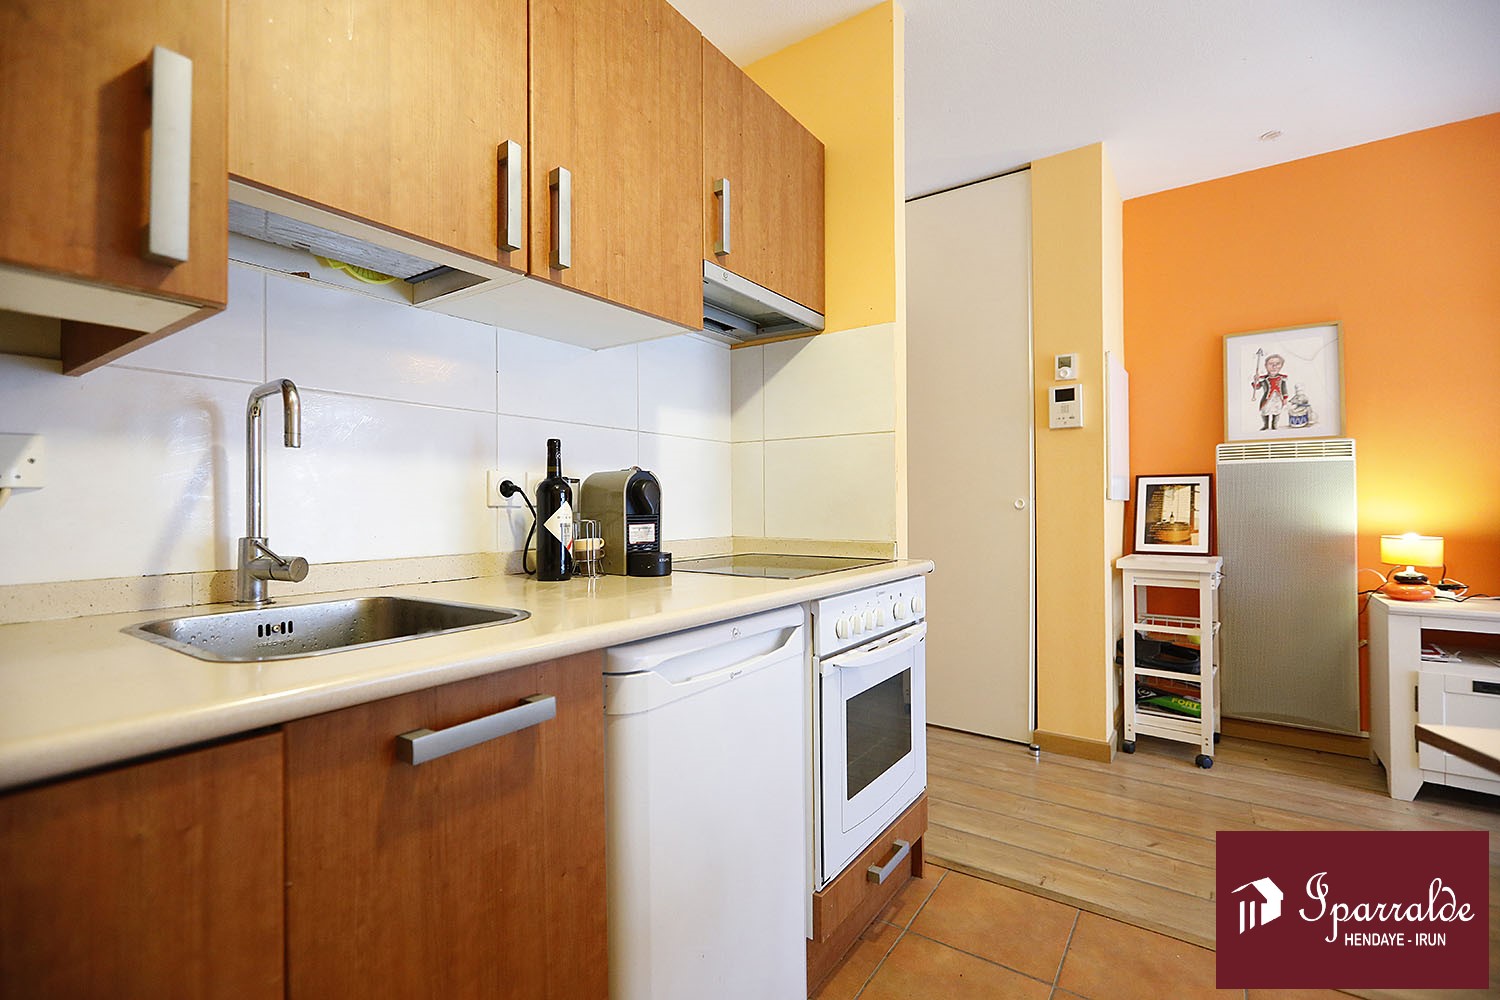 Apartamento de 28m2 en venta a 69900€ con renta vitalicia en Hendaya